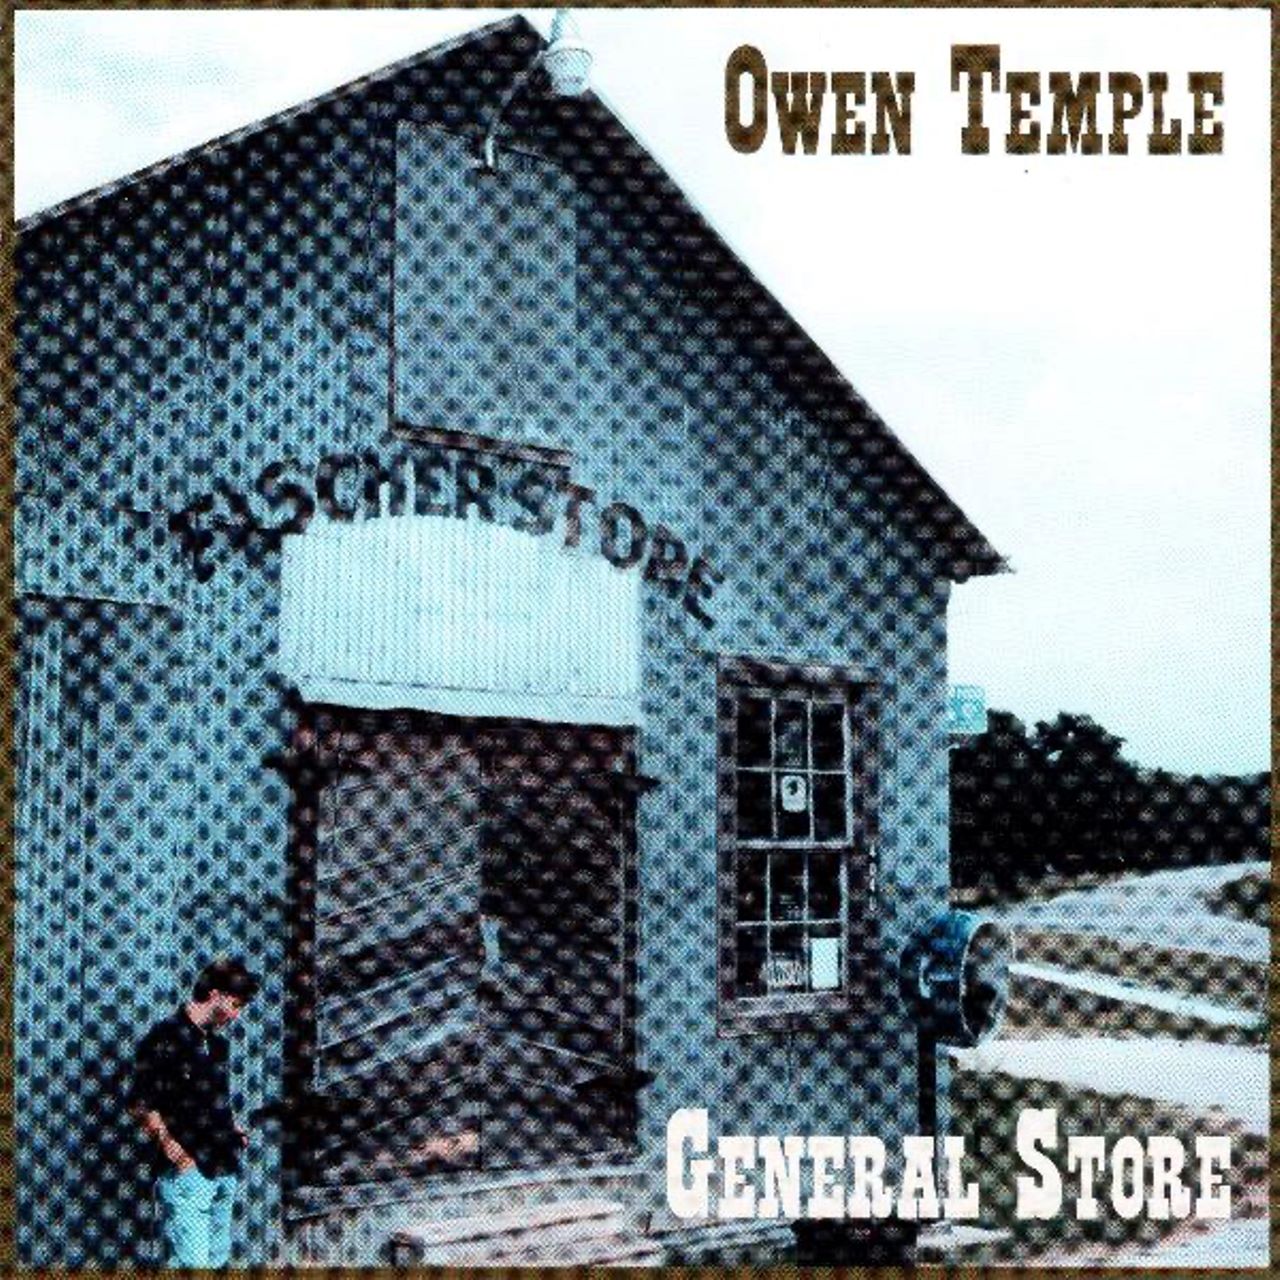 Owen Temple - General Store cover album